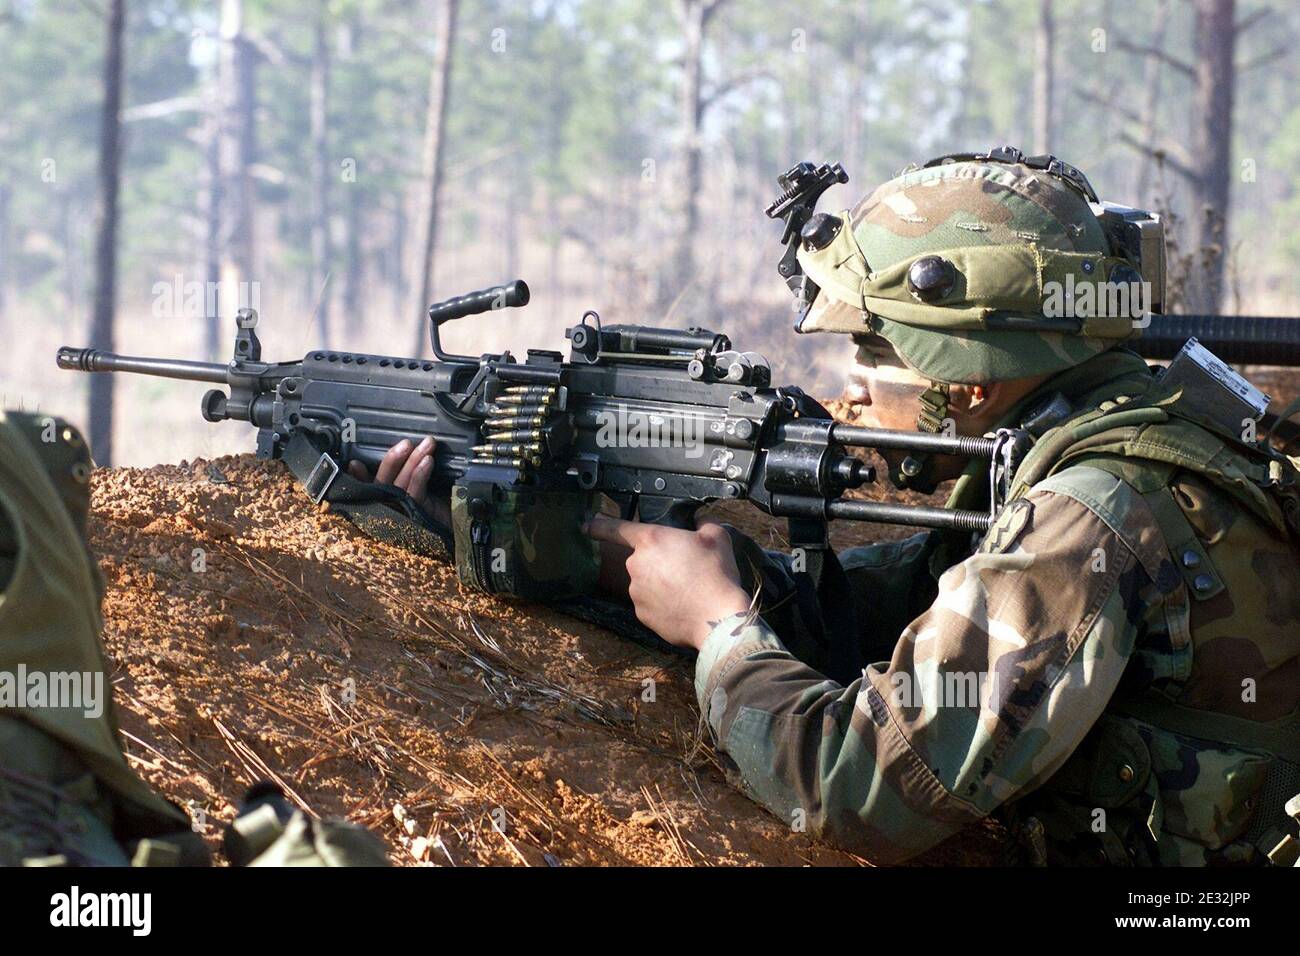 M249 FN MINIMI DA-SD-03-13170. Stock Photo